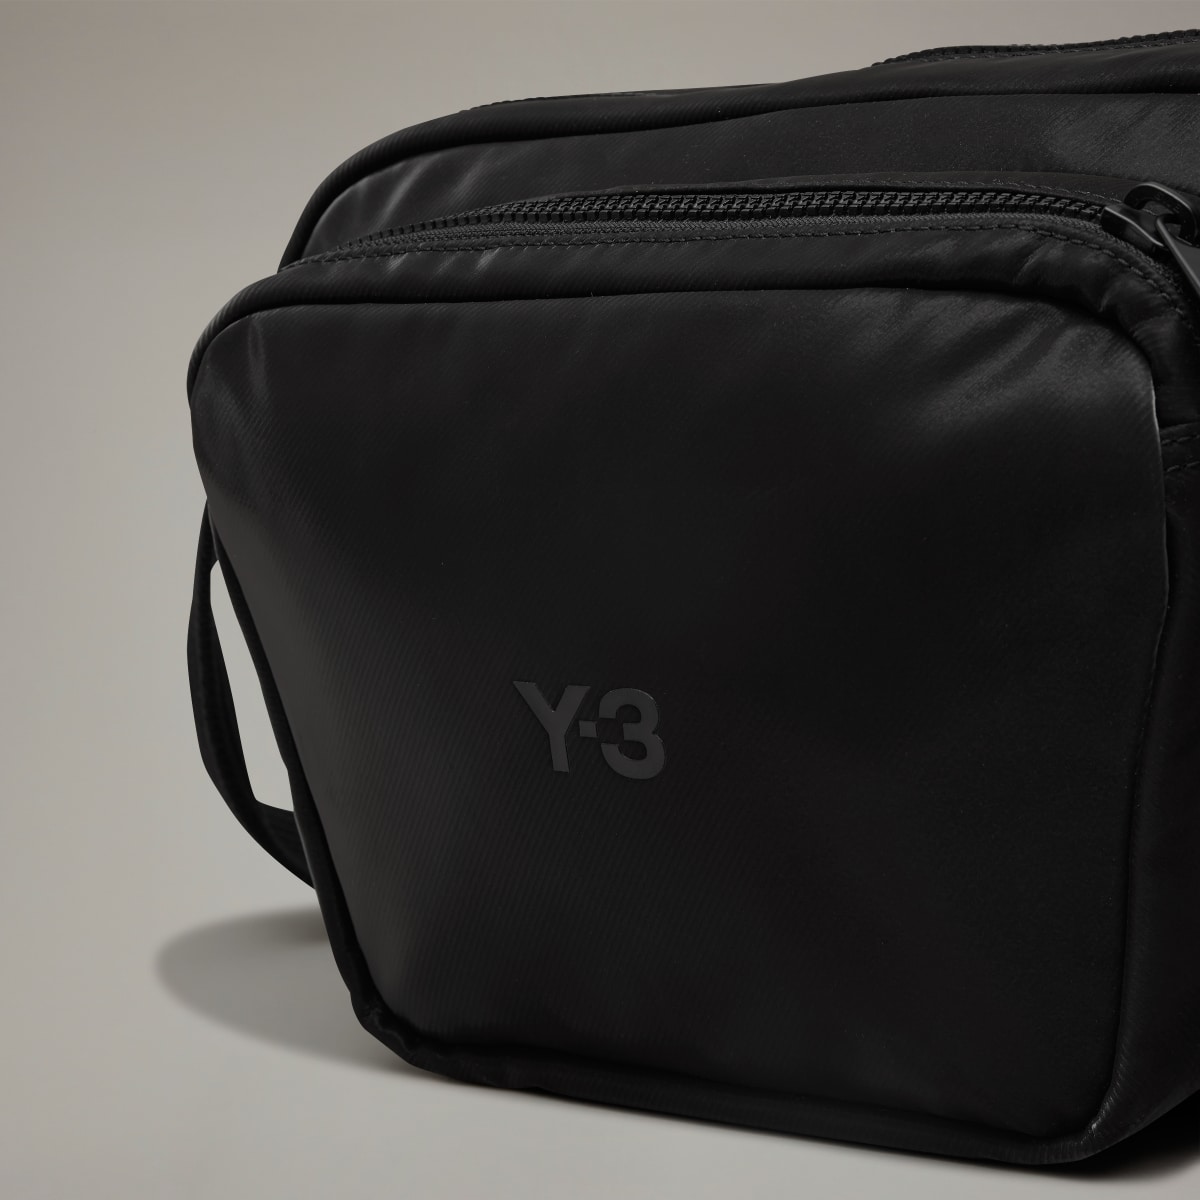 Adidas Y-3 X BODY BAG. 7